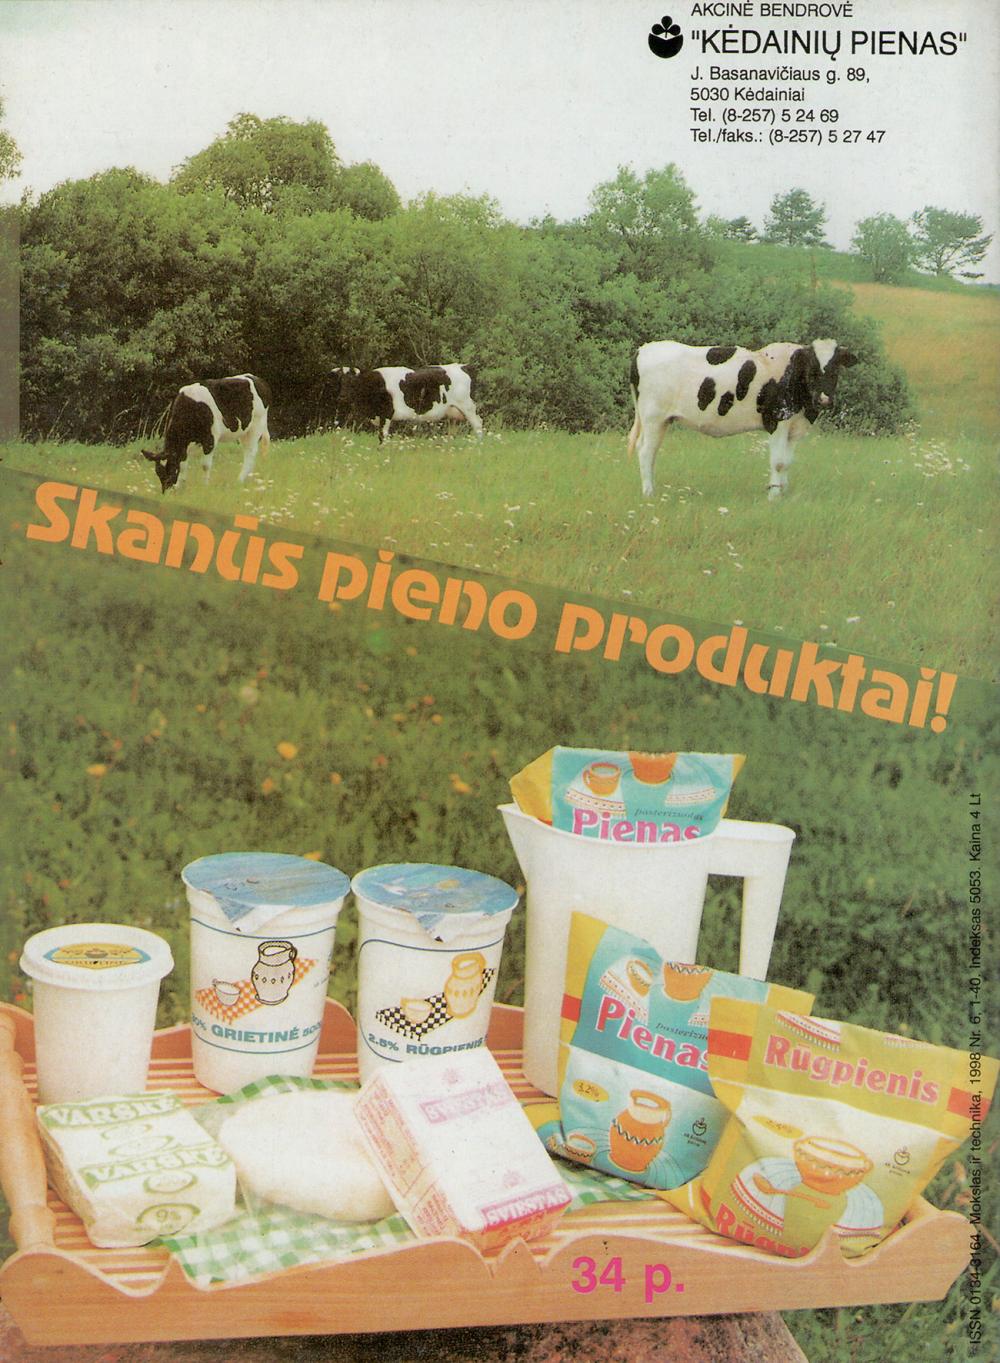 Akcinė bendrovė „Kėdainių pienas“ / Skanūs pieno produktai!